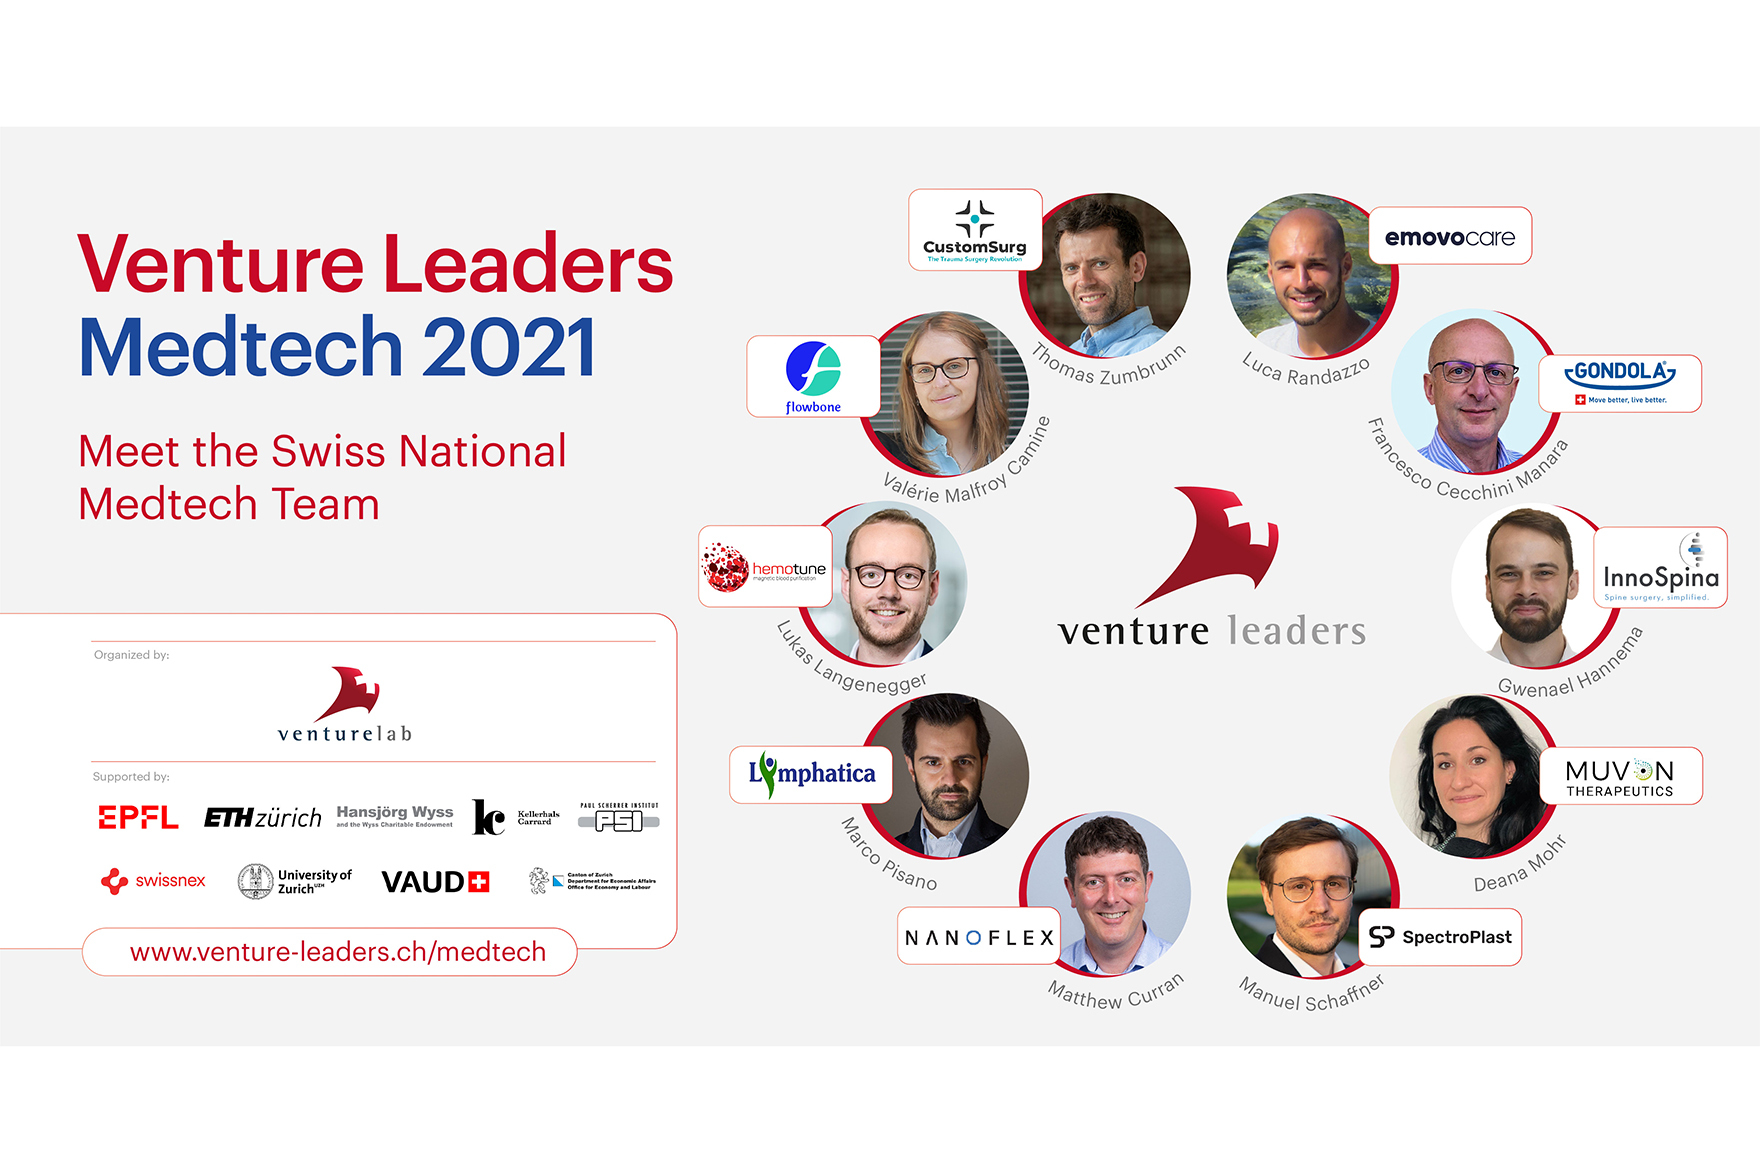 Venture Leaders Medtech 2021 by VentureLab